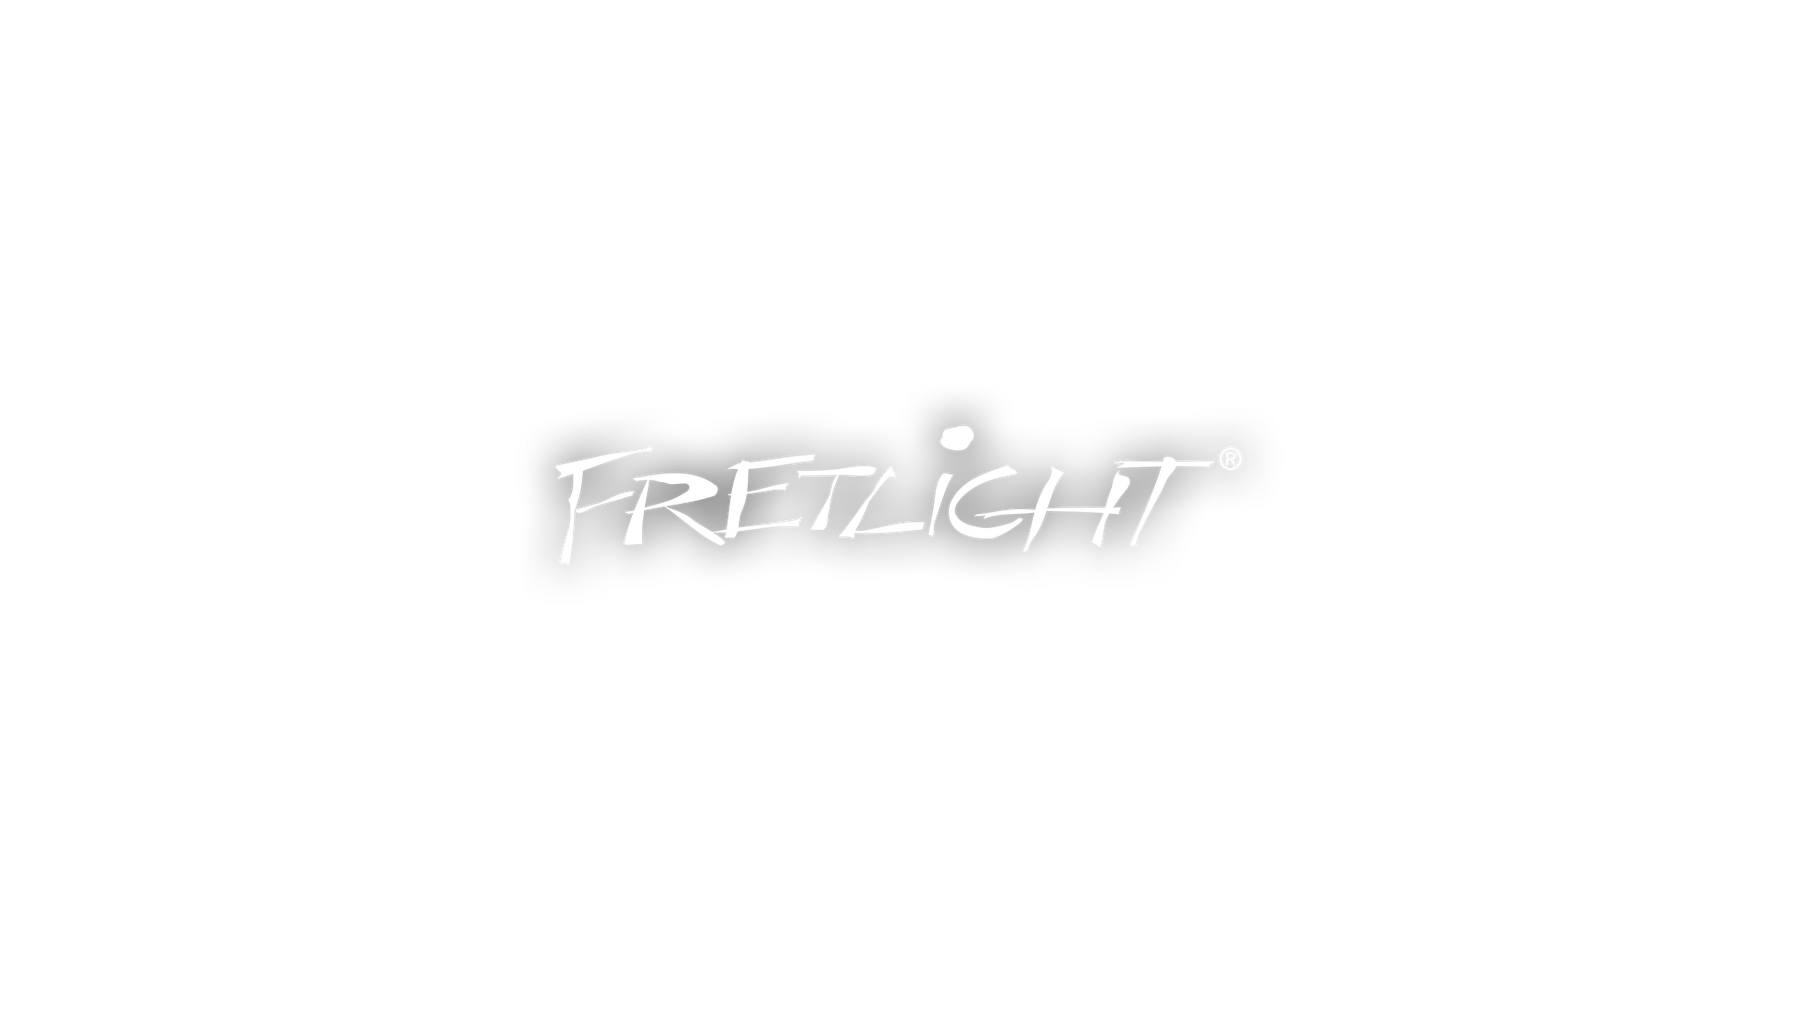 Fretlight logo center